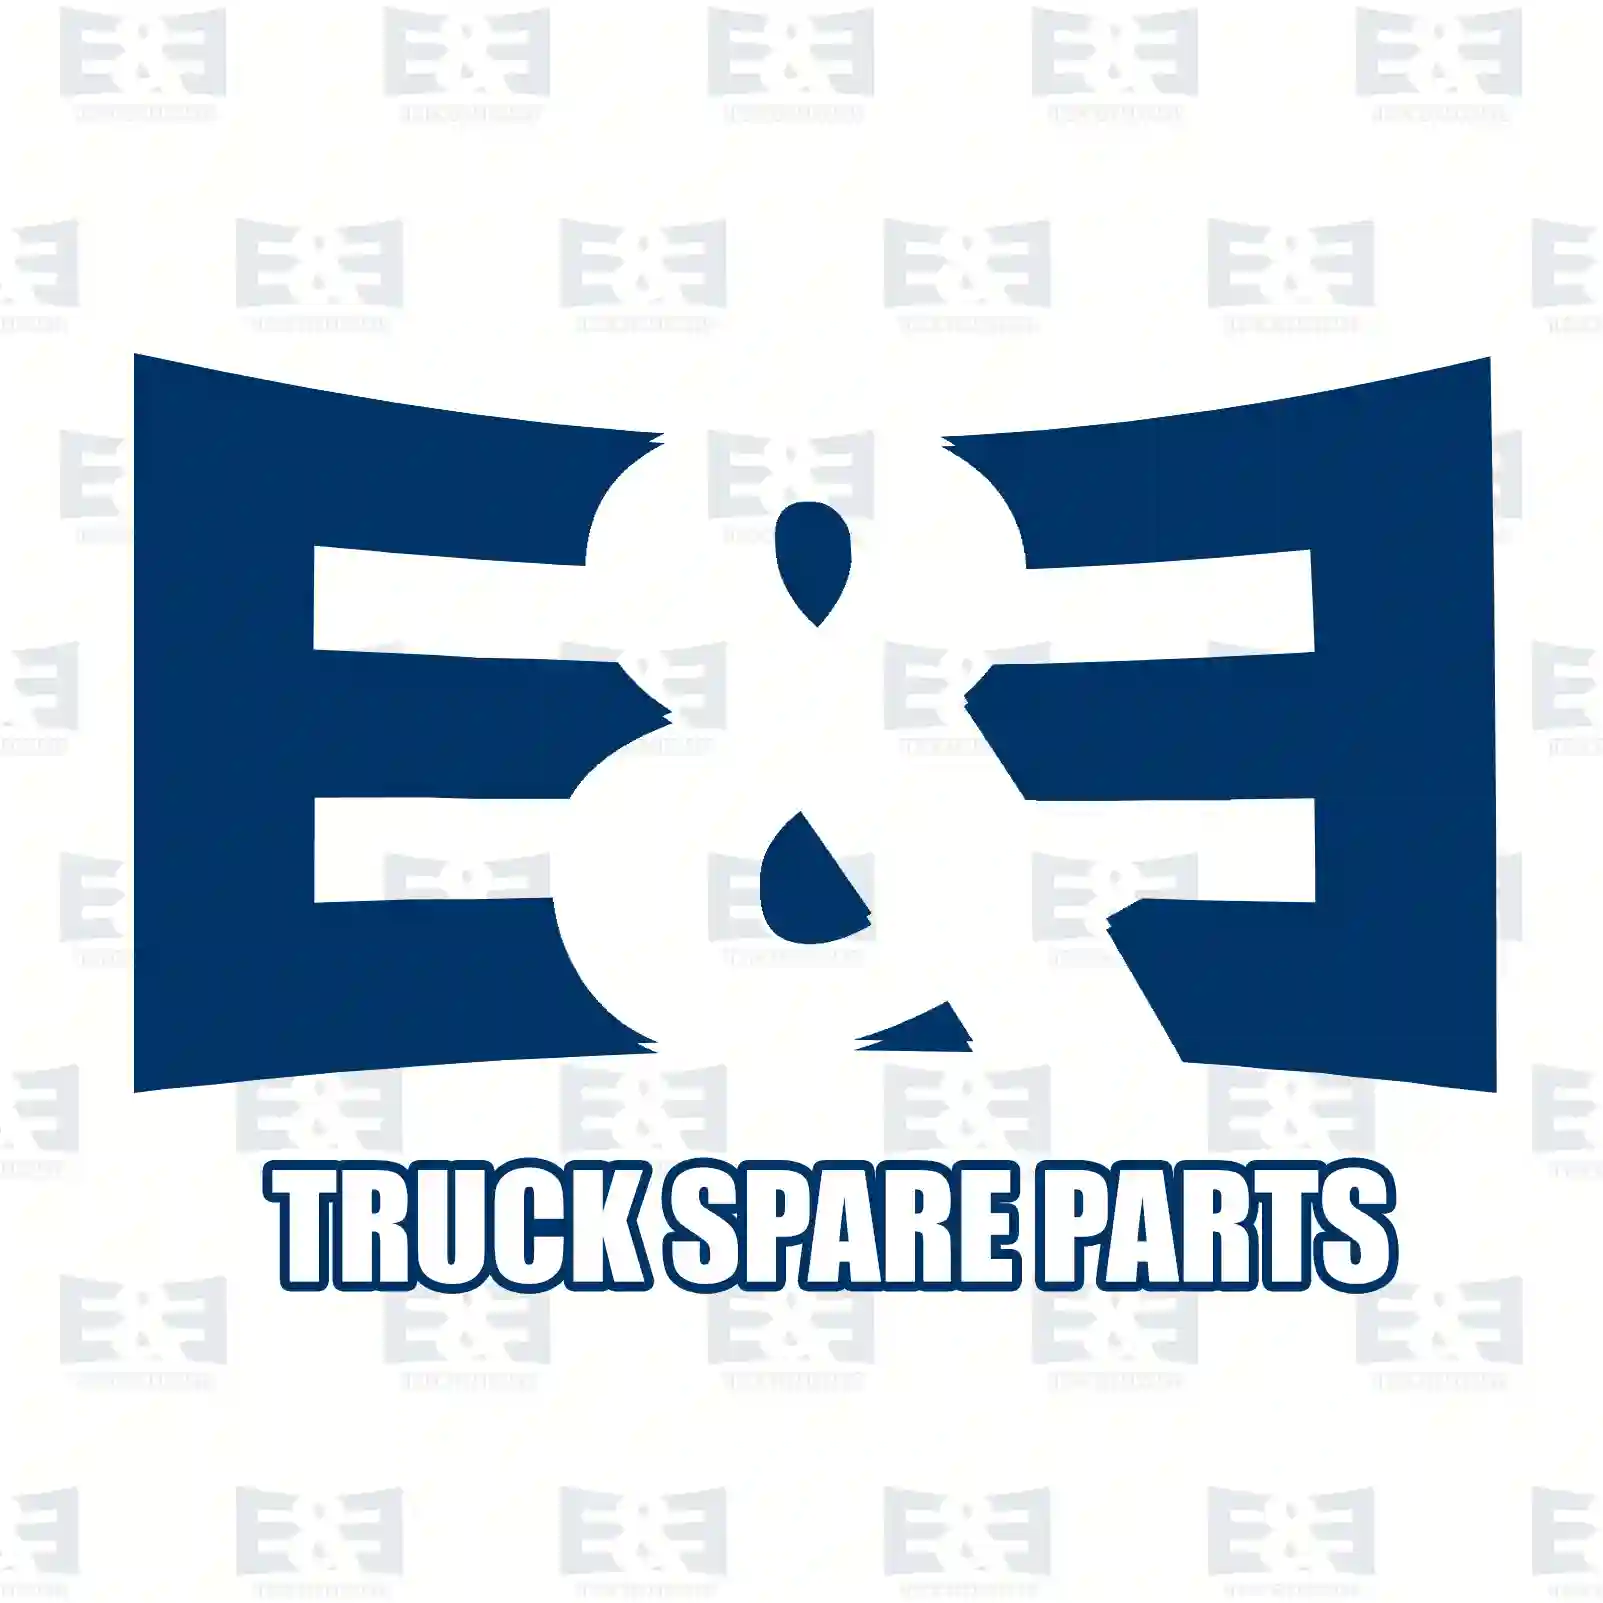 Oil seal, 2E2278007, 0159971246, 0239975447, 0239978747, ZG02736-0008 ||  2E2278007 E&E Truck Spare Parts | Truck Spare Parts, Auotomotive Spare Parts Oil seal, 2E2278007, 0159971246, 0239975447, 0239978747, ZG02736-0008 ||  2E2278007 E&E Truck Spare Parts | Truck Spare Parts, Auotomotive Spare Parts